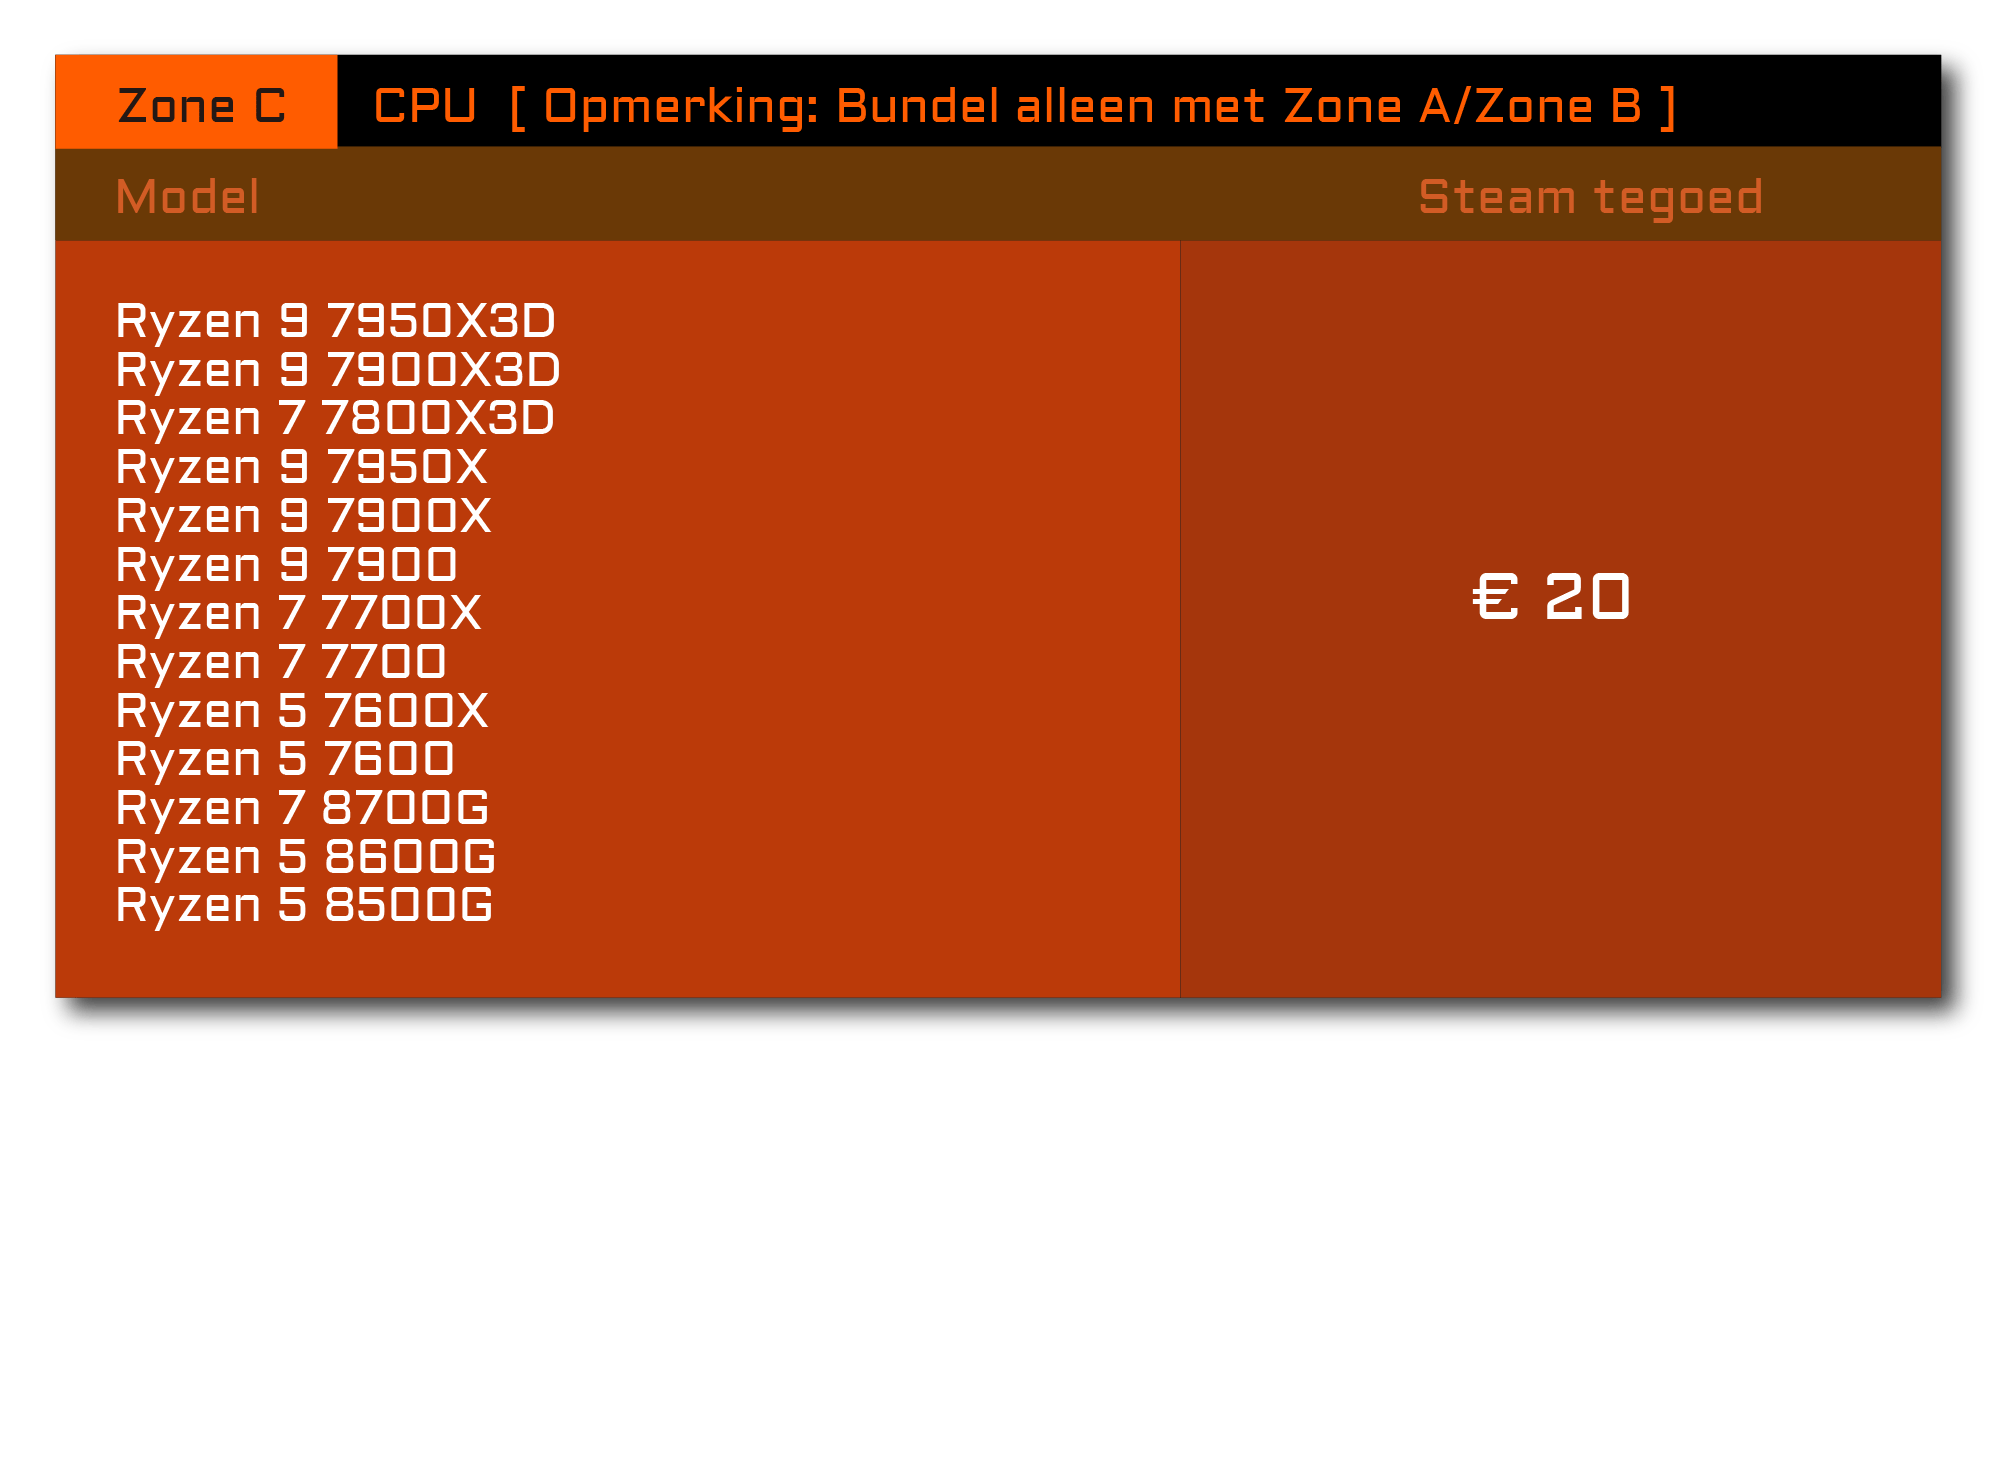 Lijst met bundelproducten - Zone C - CPU - Opmerking: Bundel alleen met Zone A/Zone B